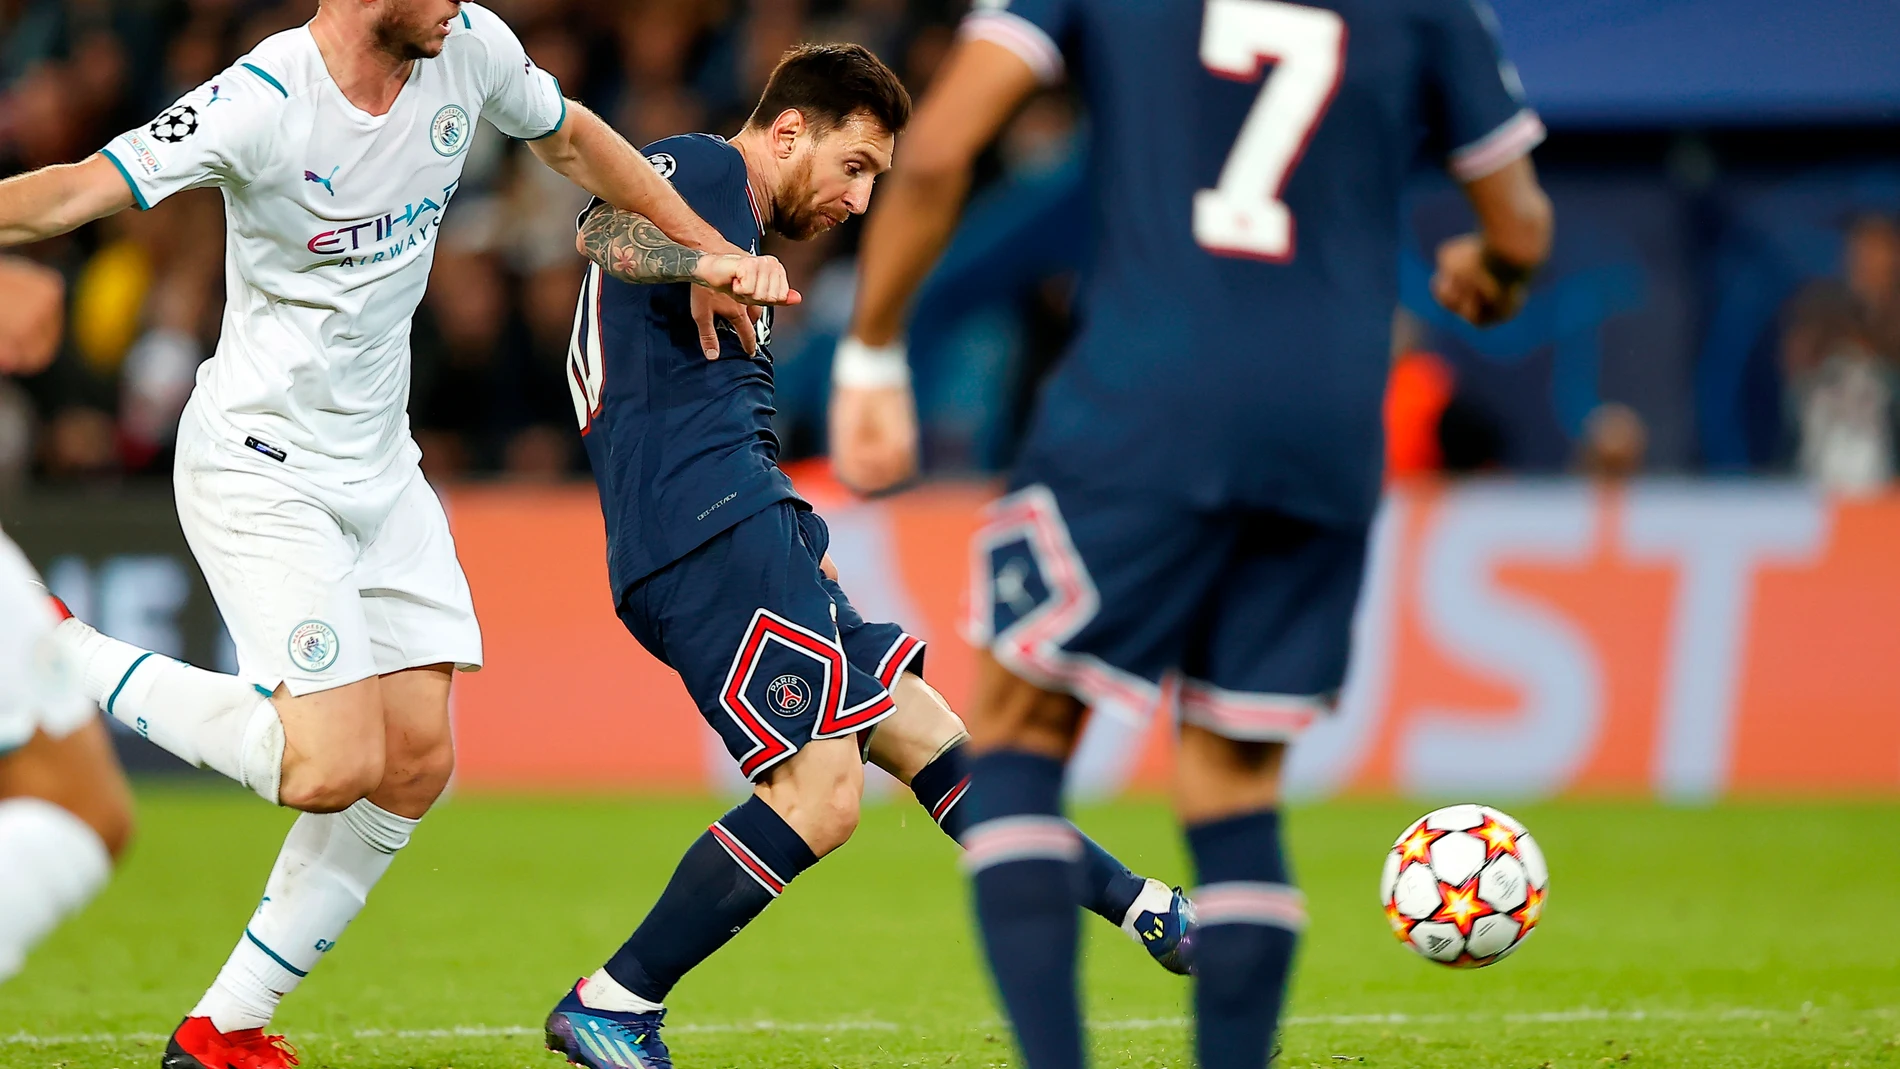 El remate con el que Messi marcó su primer gol con la camiseta del PSG